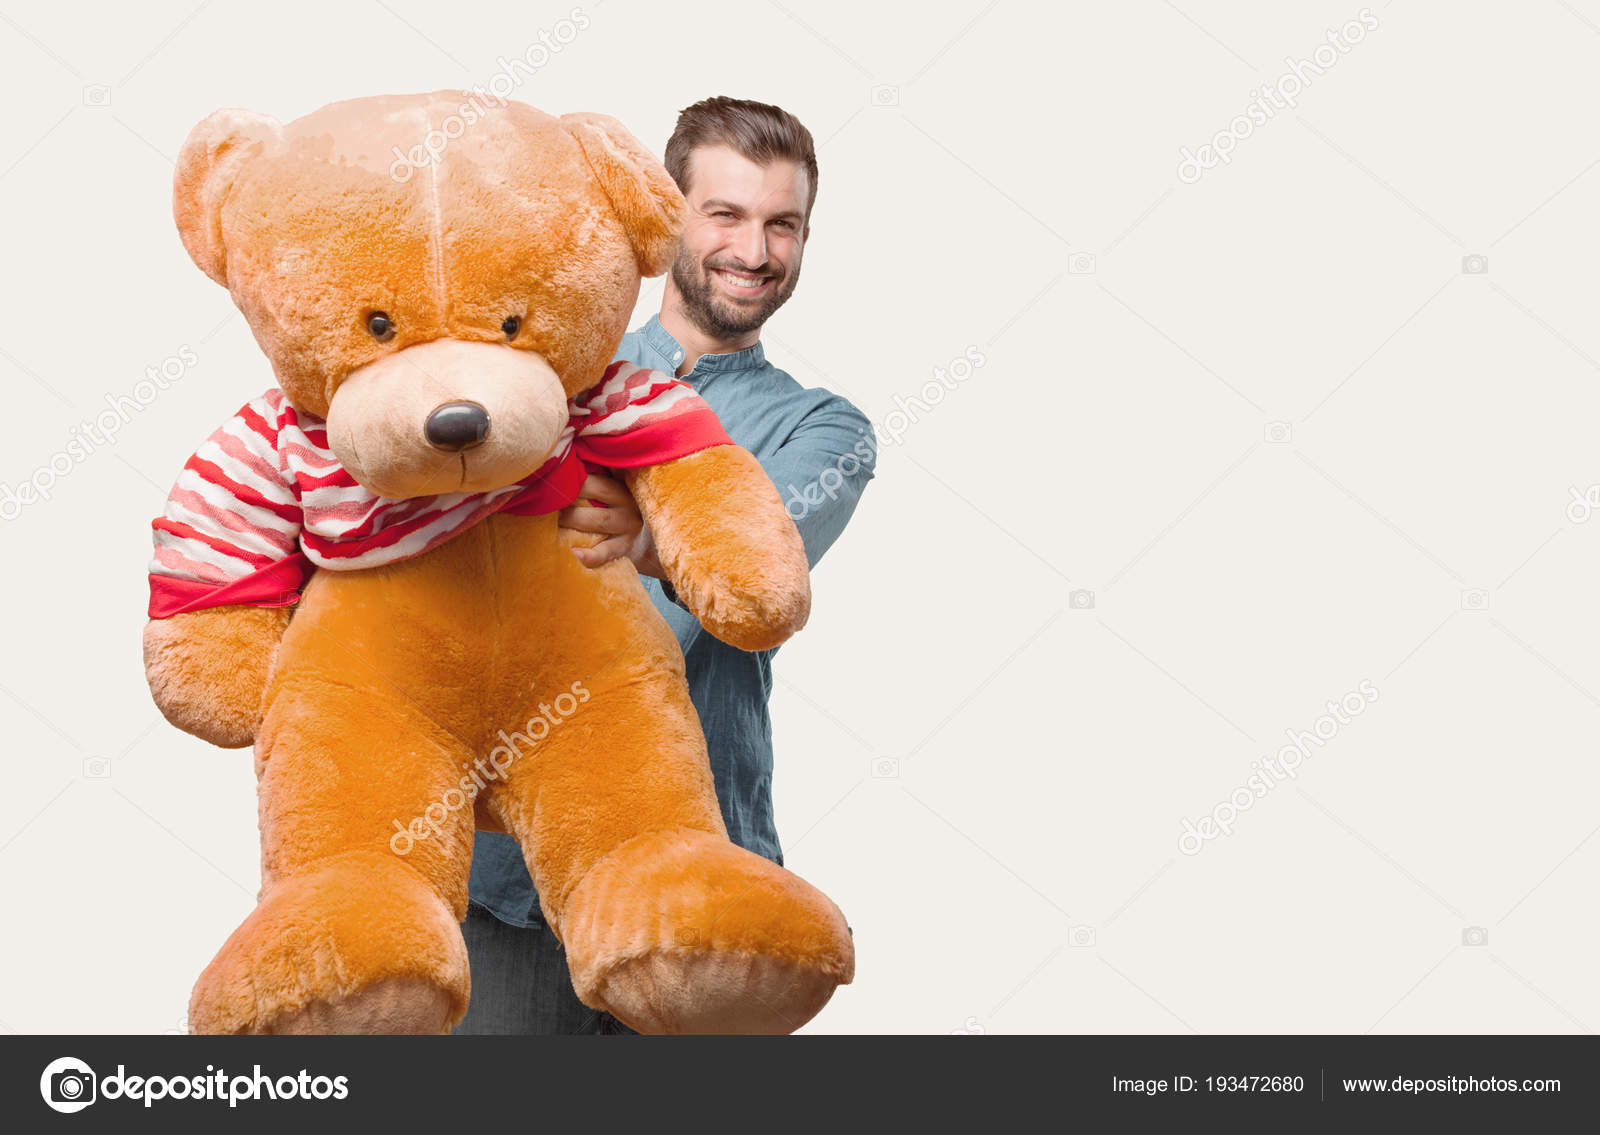 teddy bear person